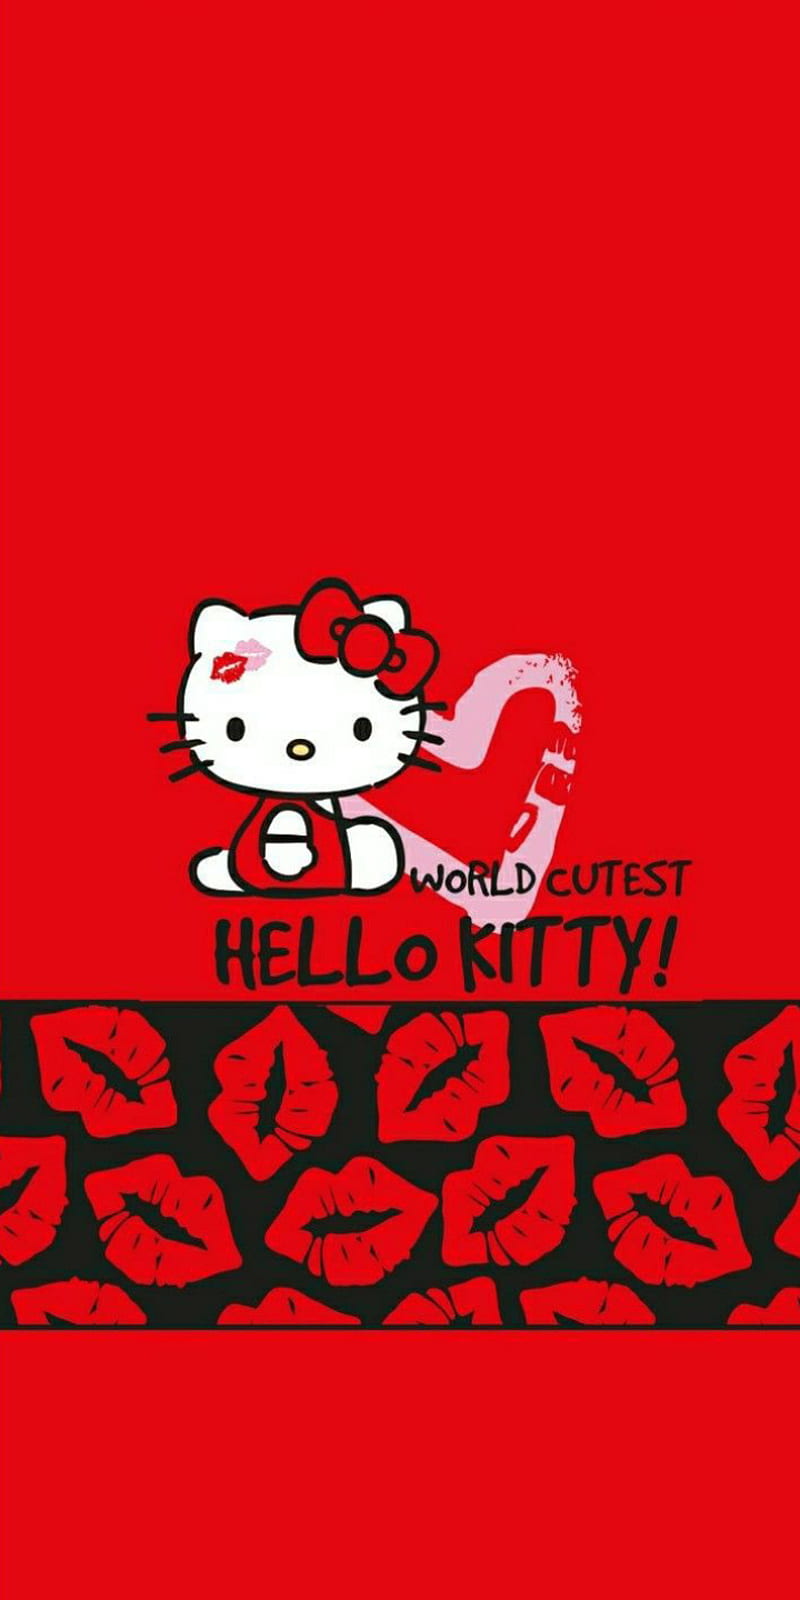 Hãy trang trí cho chiếc điện thoại của bạn với bức ảnh nền Hello Kitty HD đáng yêu nhất. Chất lượng hình ảnh sắc nét đến từng chi tiết sẽ khiến bạn chìm đắm trong thế giới của Hello Kitty. Dù bạn là fan hâm mộ hay một người thích sự ngọt ngào, bức ảnh nền này sẽ không làm bạn thất vọng.